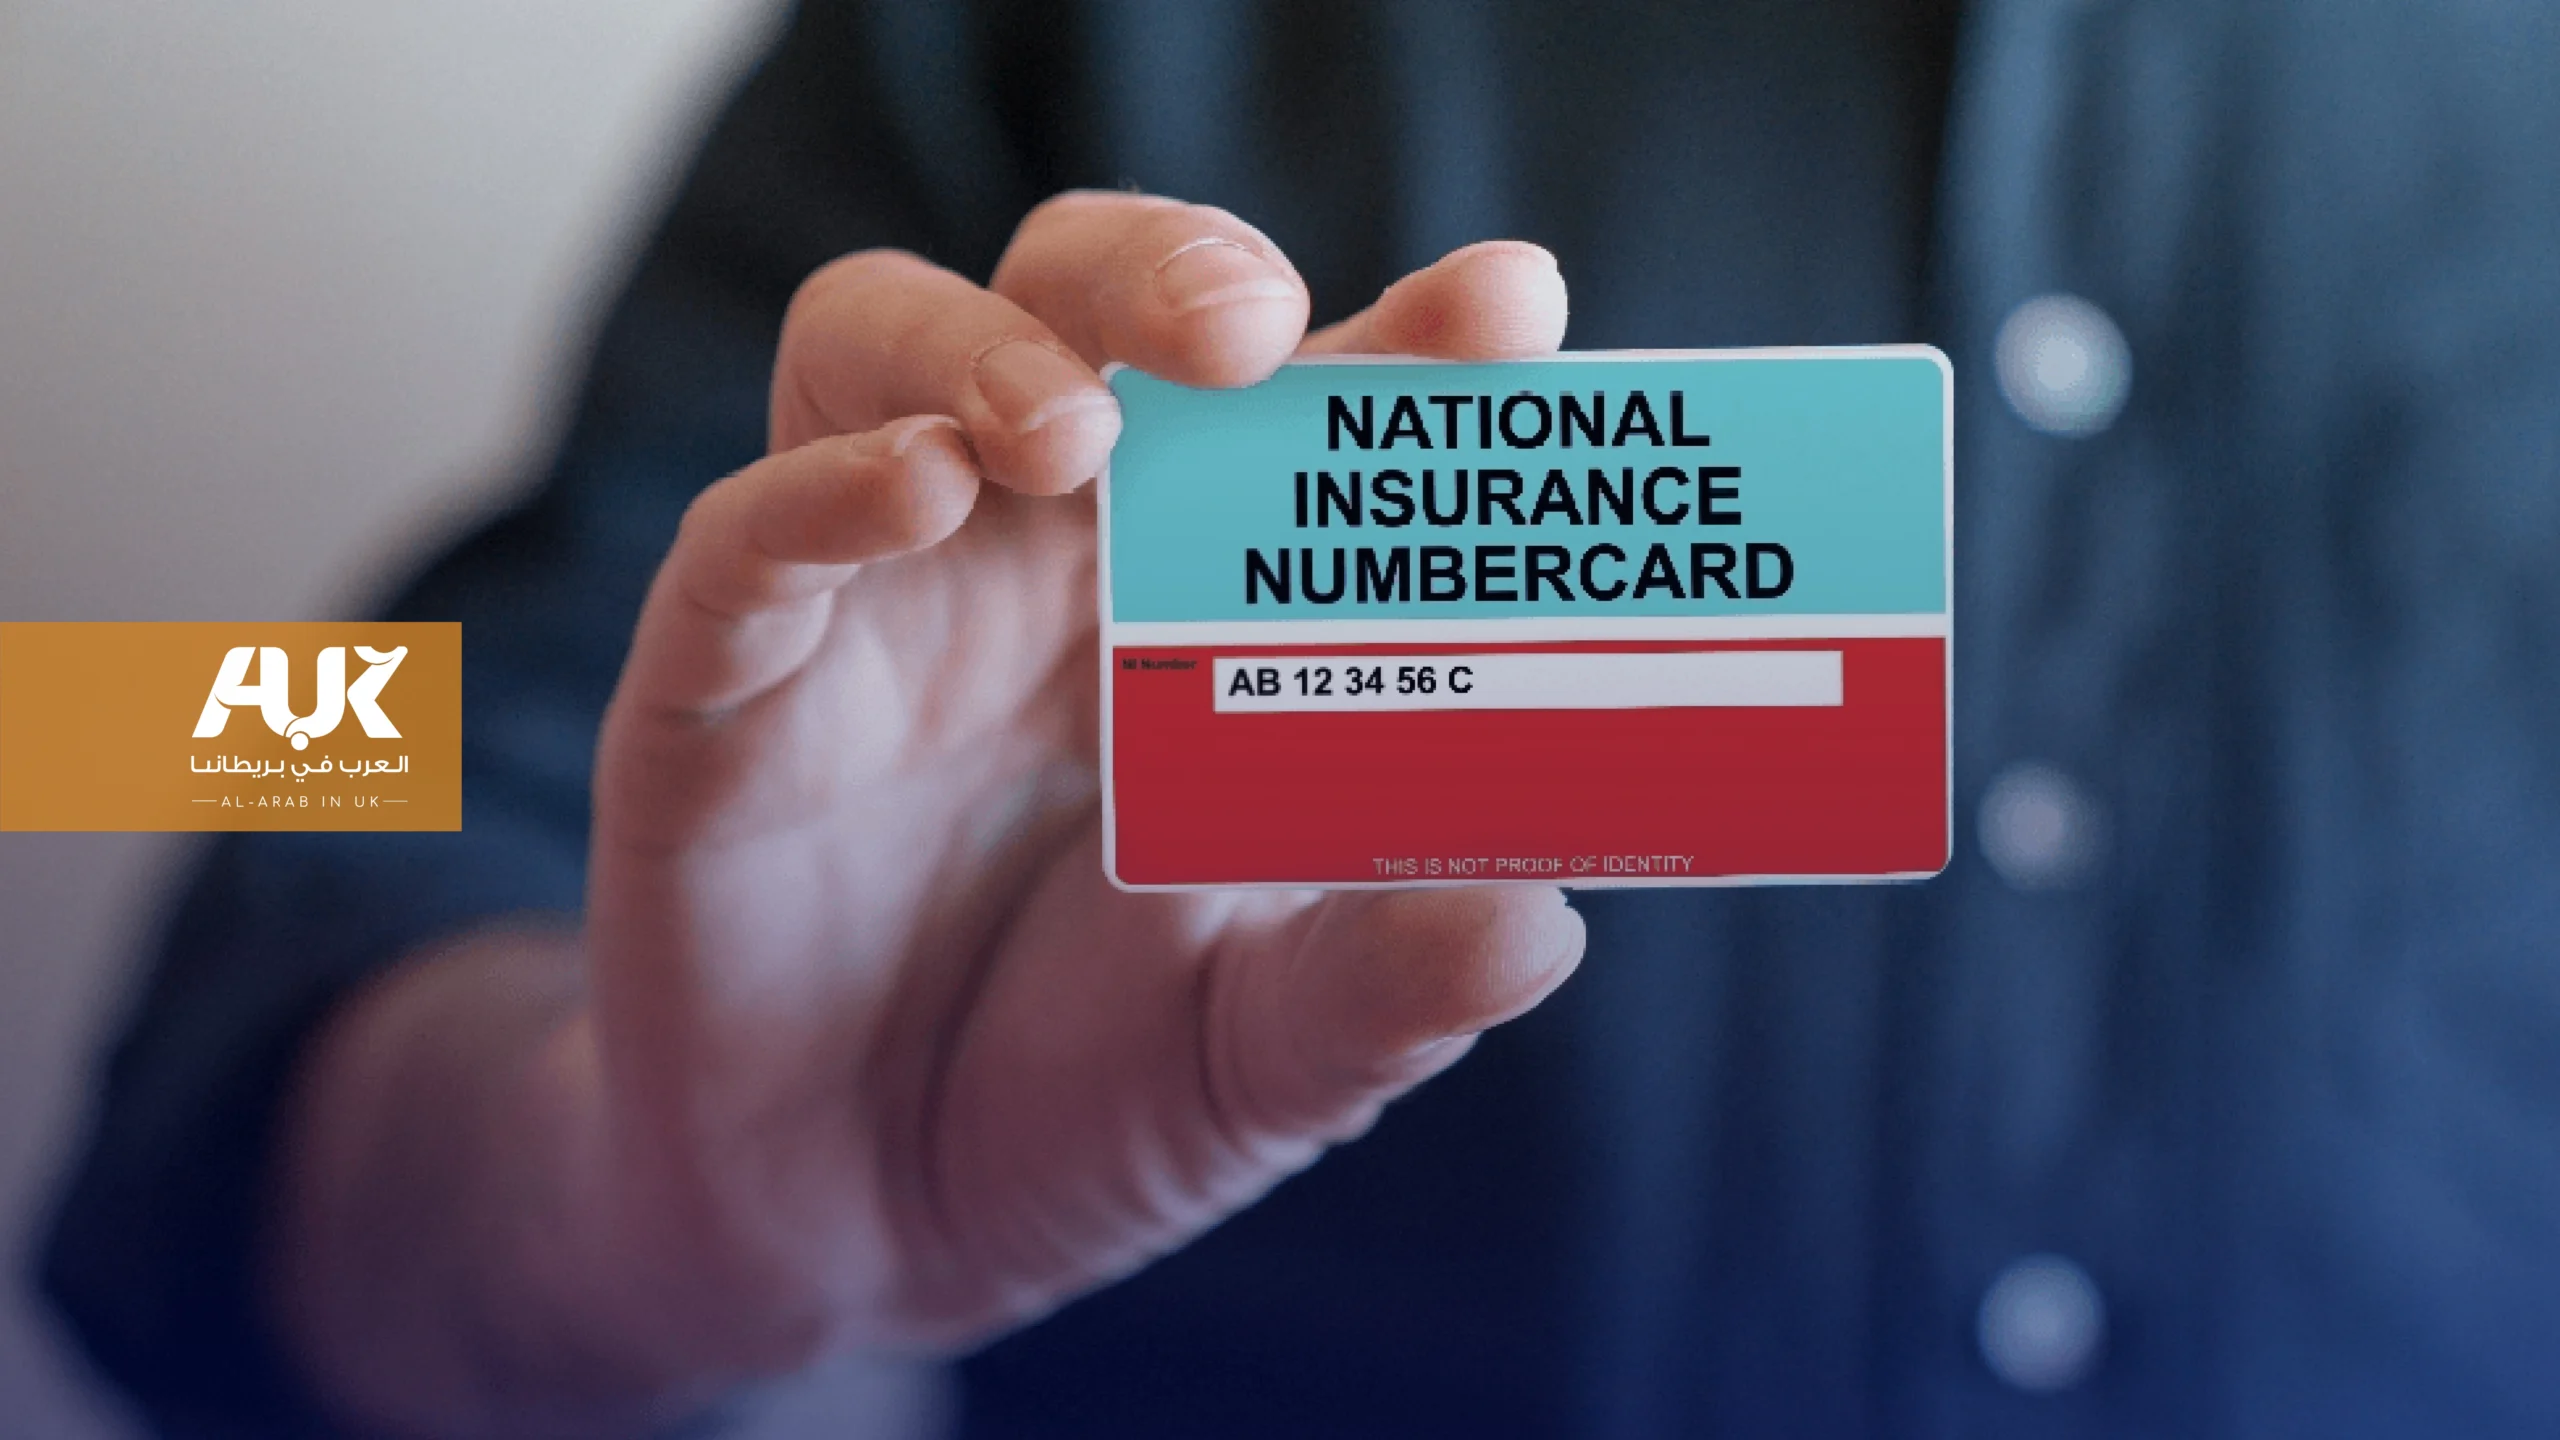 كيف تحصل على رقم الضمان الوطني في بريطانيا (National insurance number)؟